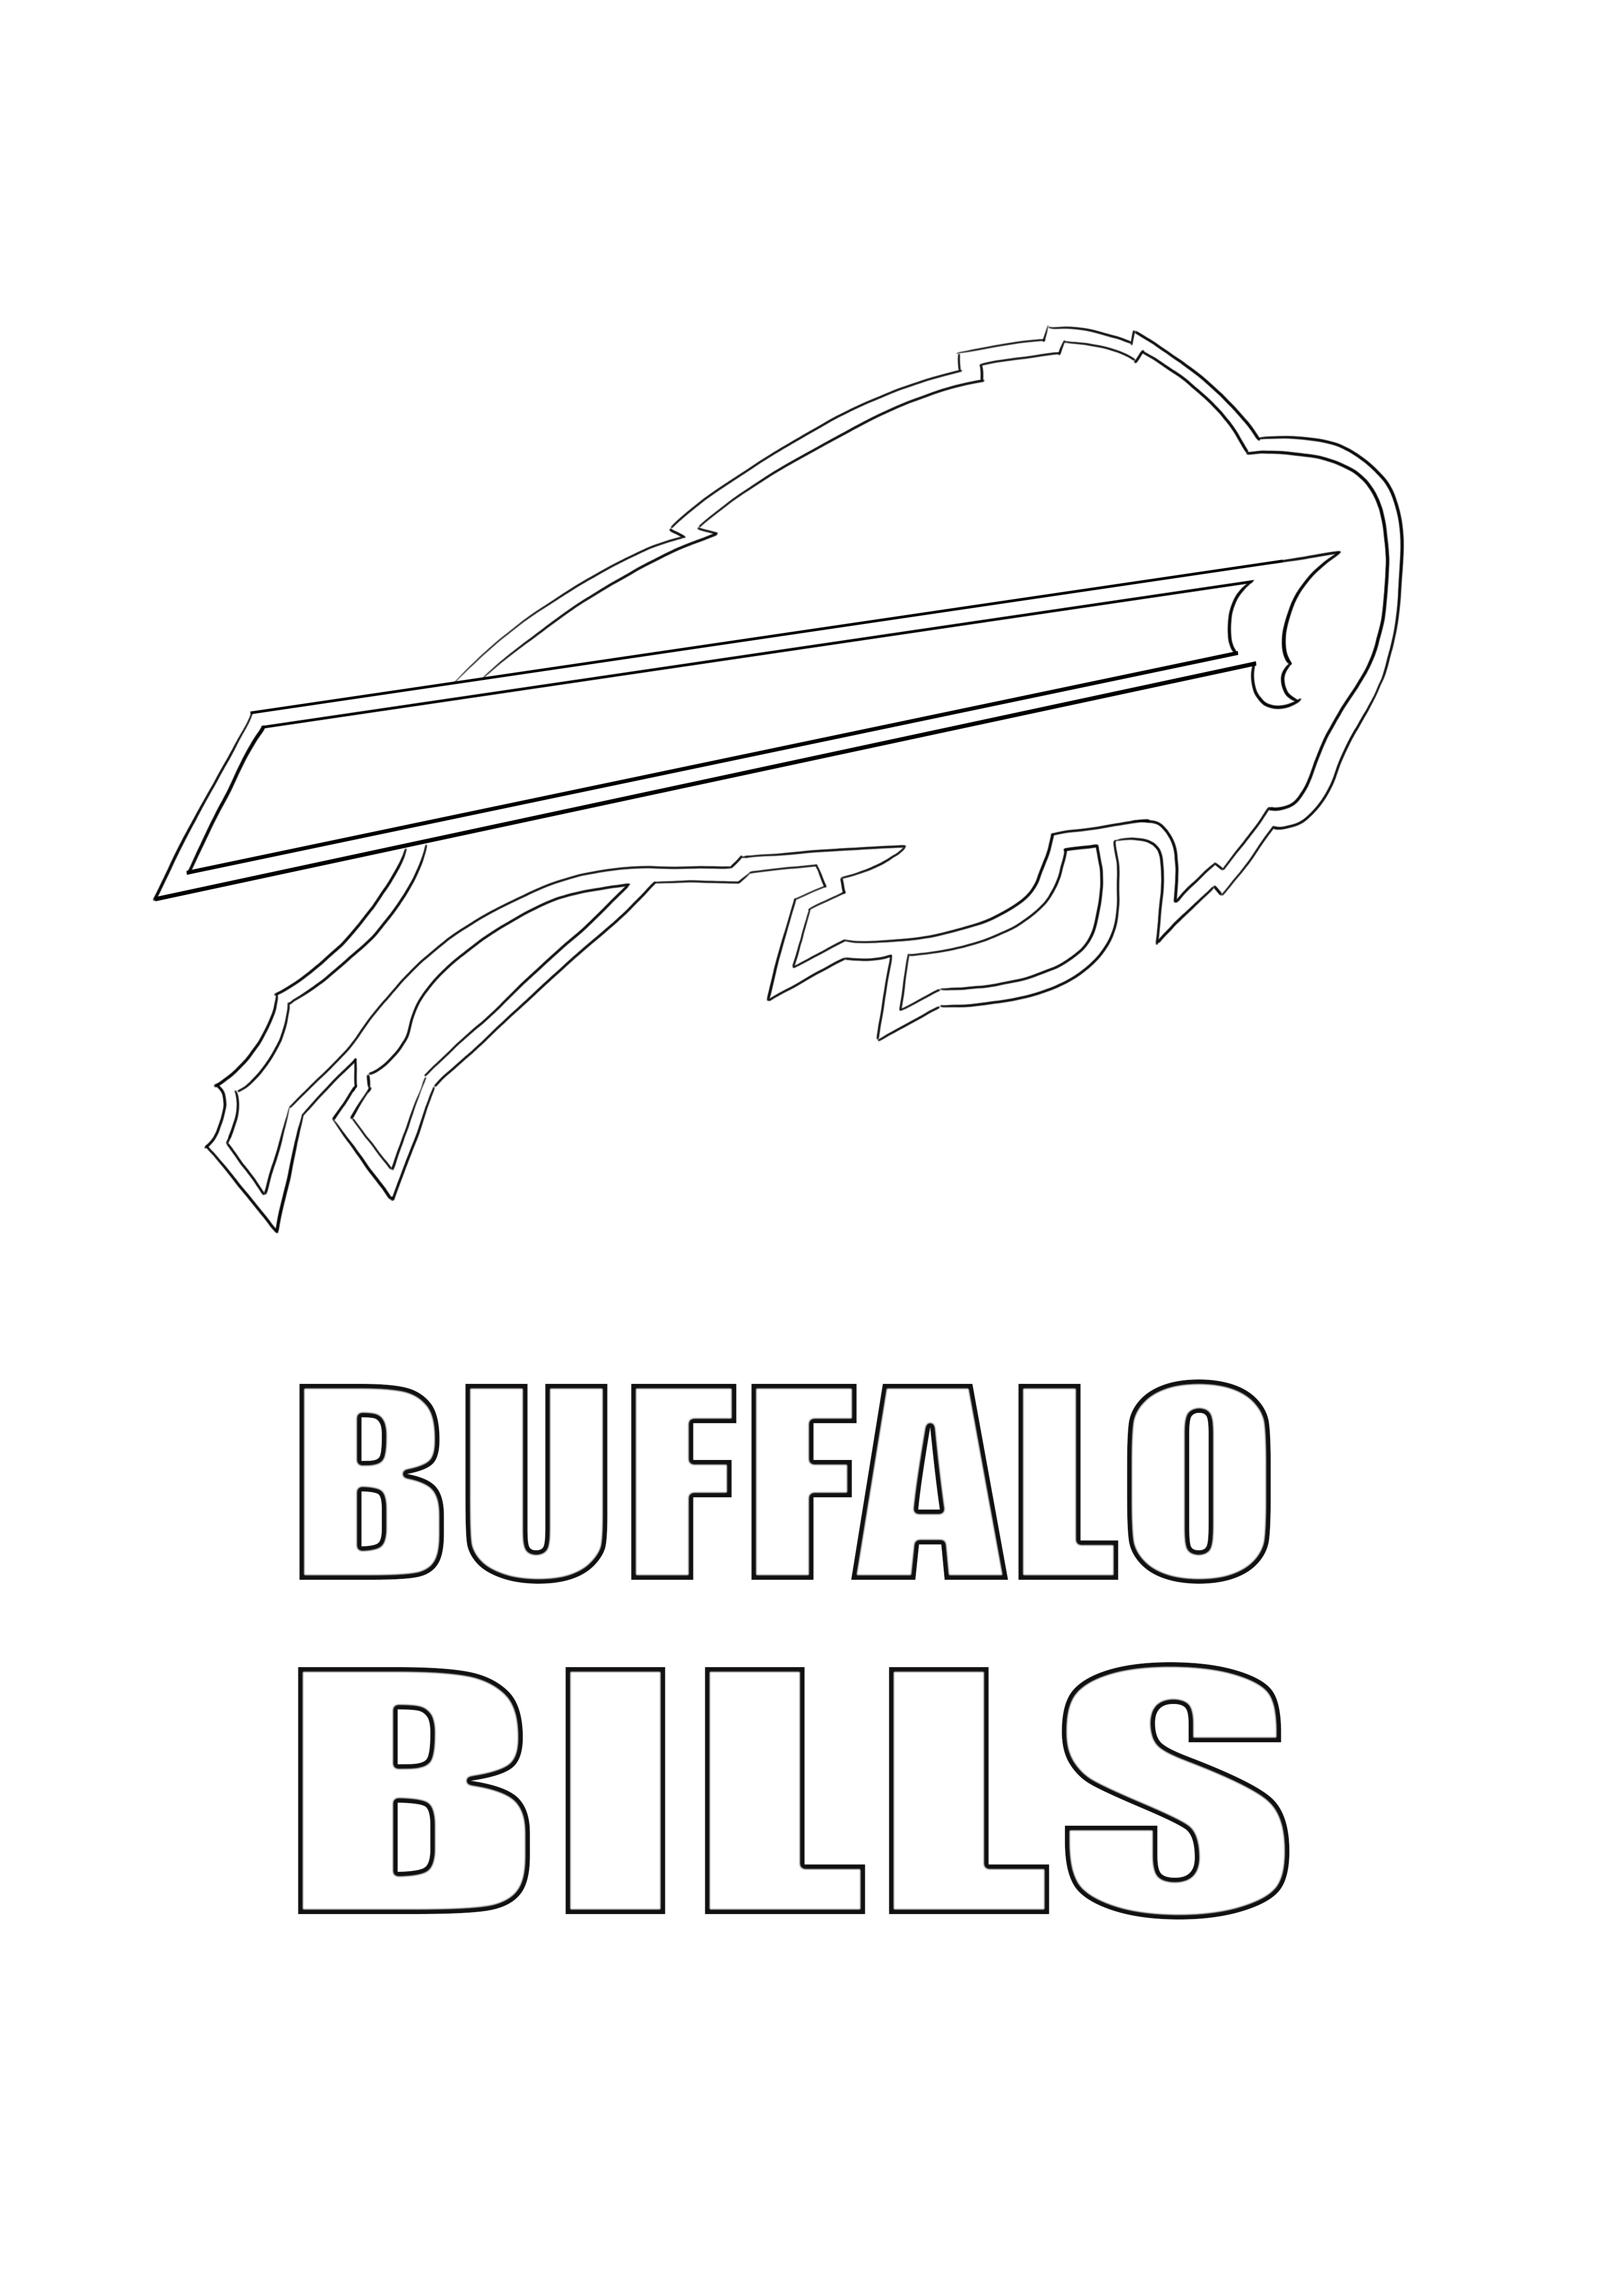 Imagem para colorir do logotipo de contas de búfalo para impressão gratuita